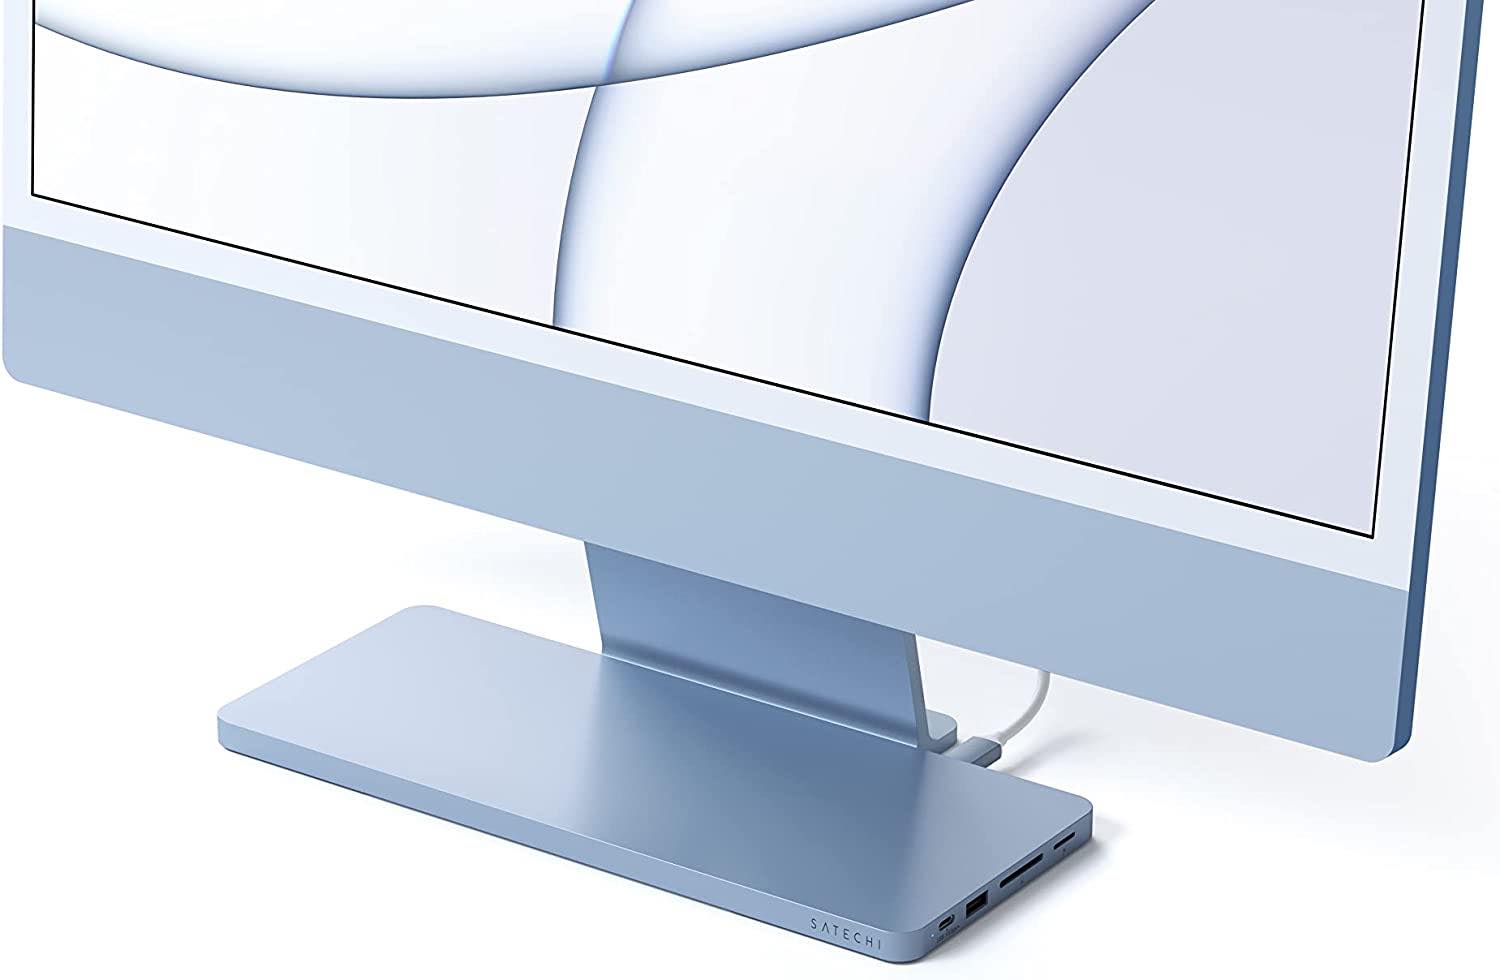 Satechi、｢iMac 24インチ｣のスタンドに被せるように設置できてSSDスロットも内蔵したUSB-Cドックを販売開始